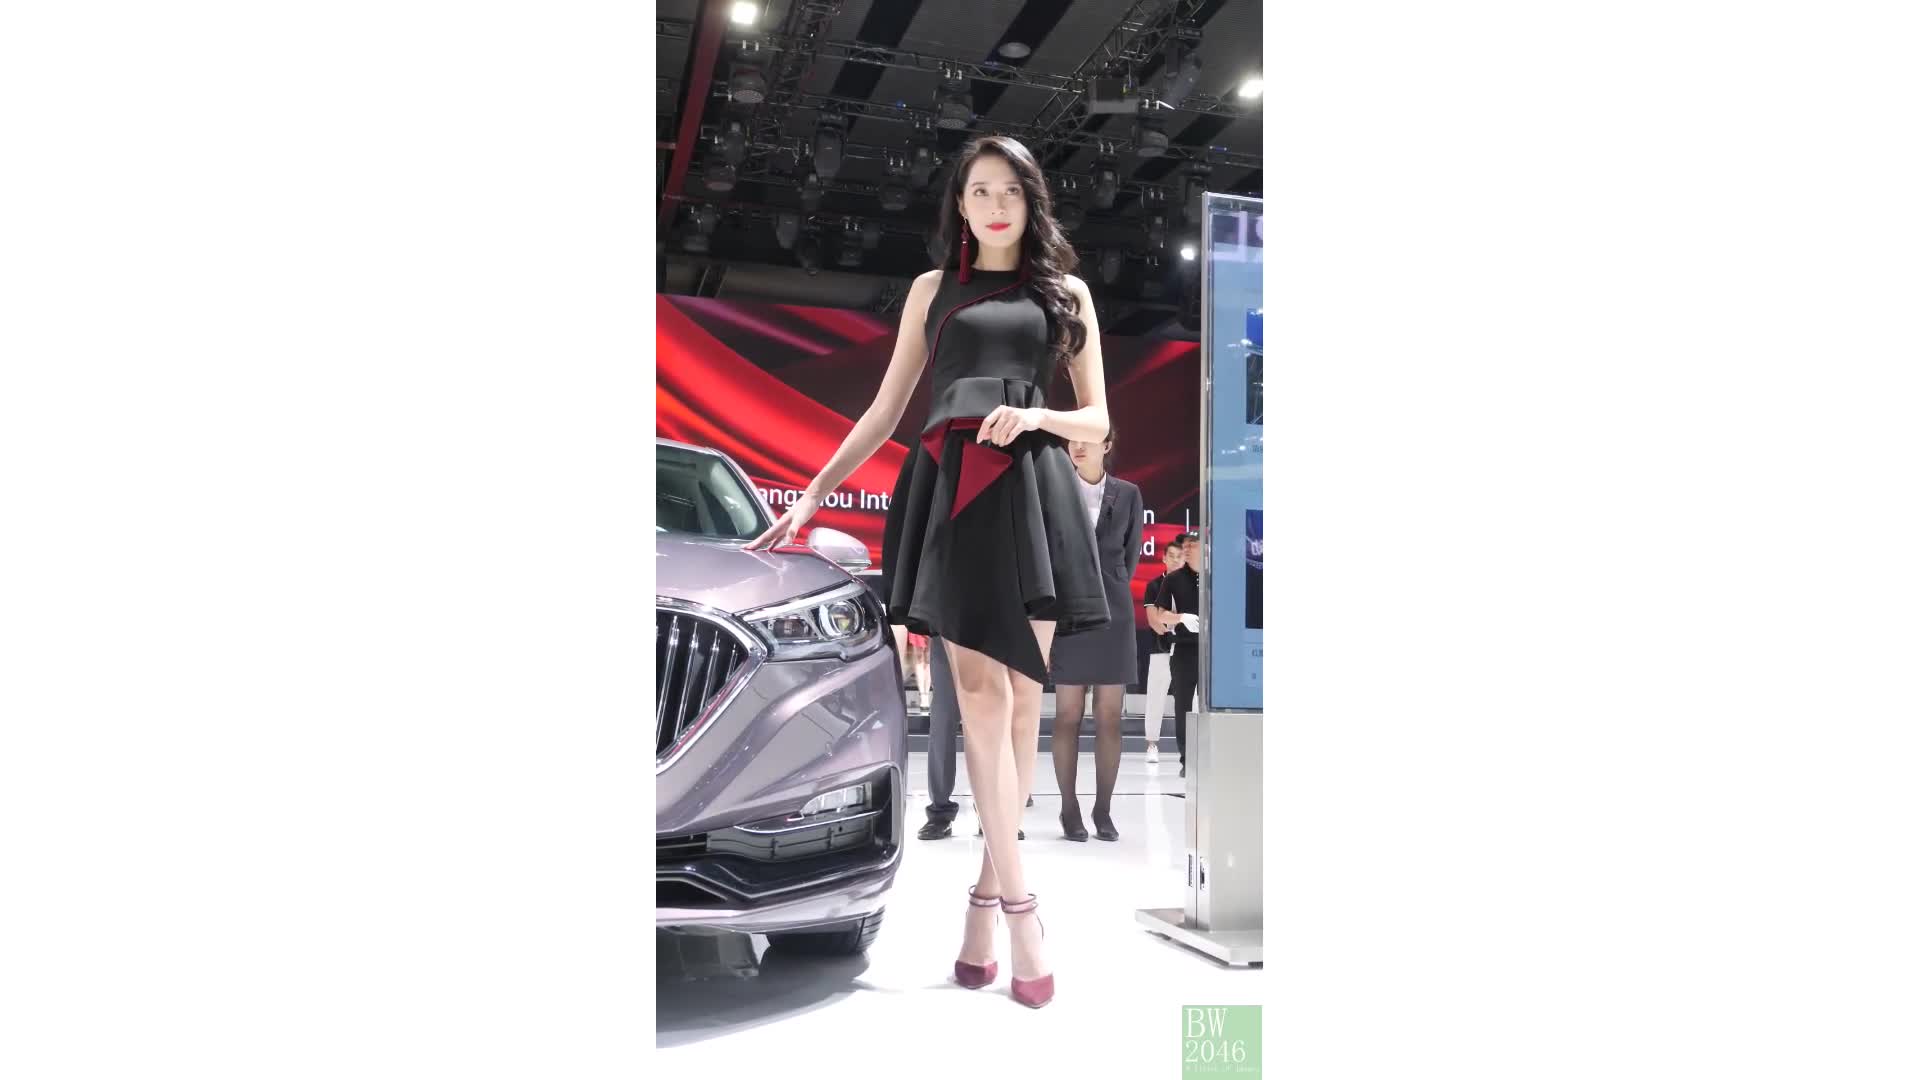 廣州汽車展  Auto Guangzhou 2019 – 車展女模 09 @ 中国一汽 紅旗轎車 (Desktop Version)